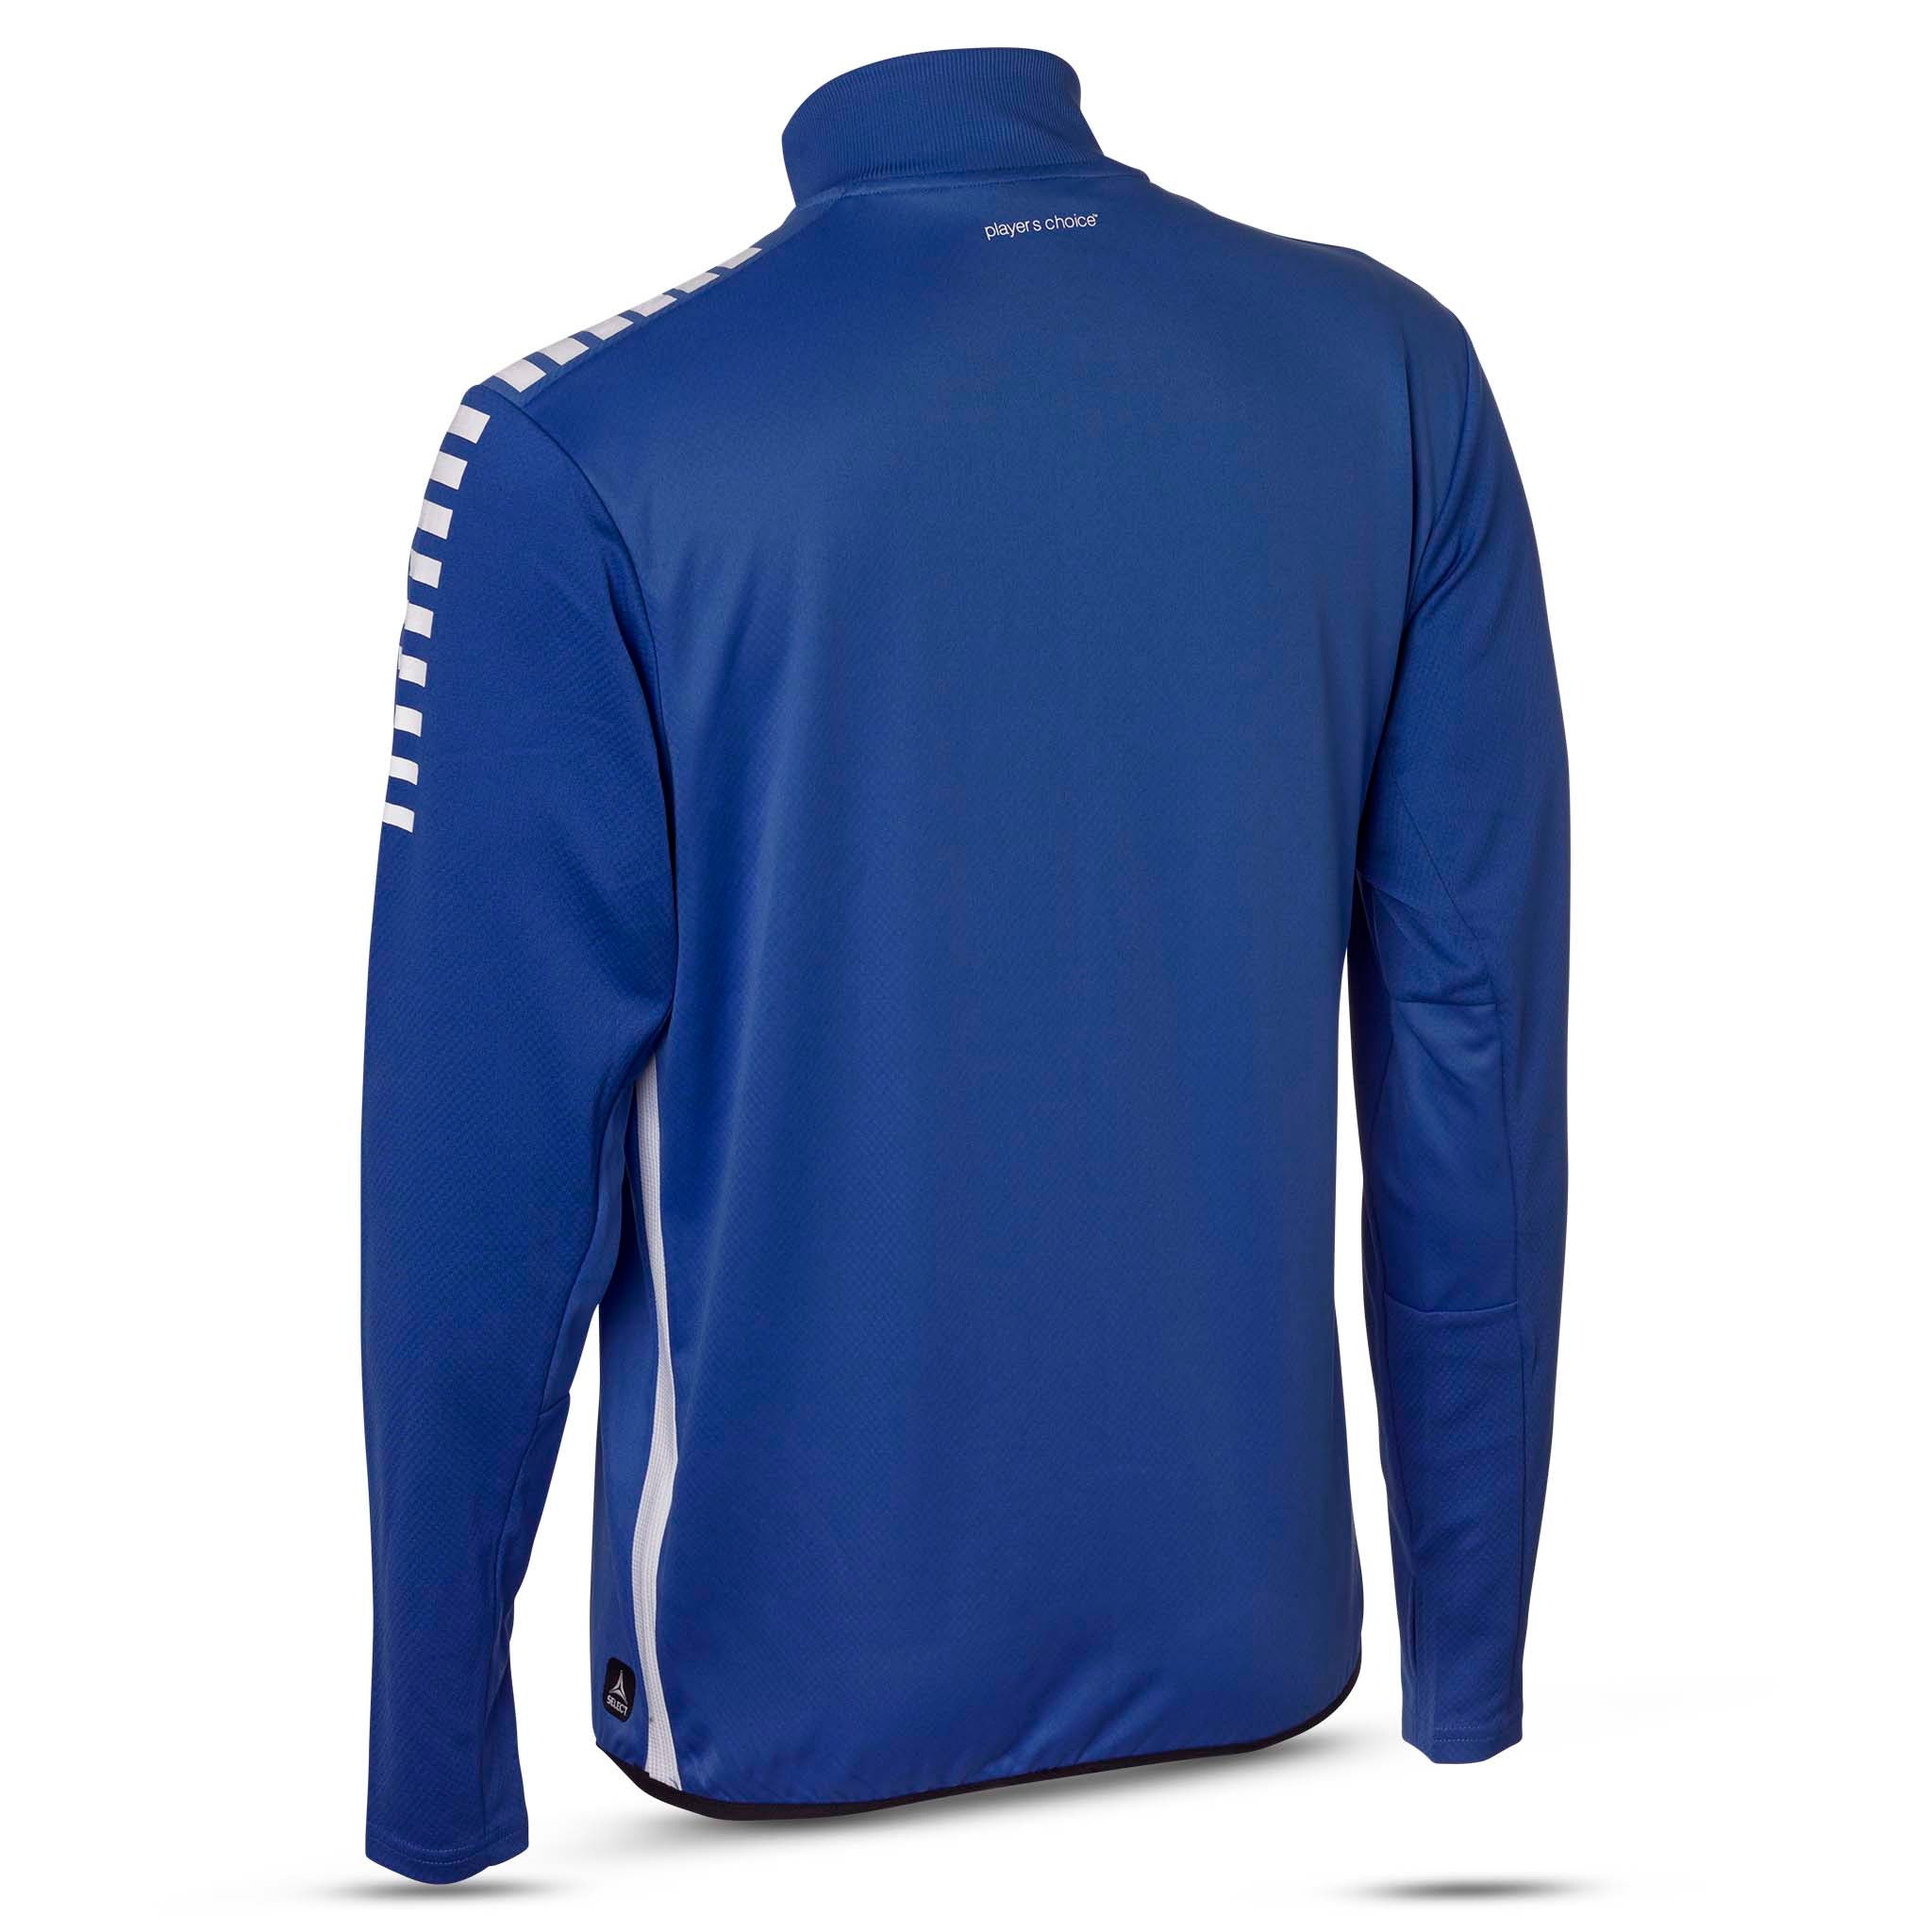 Sweatshirt för träning - Monaco #färg_blå